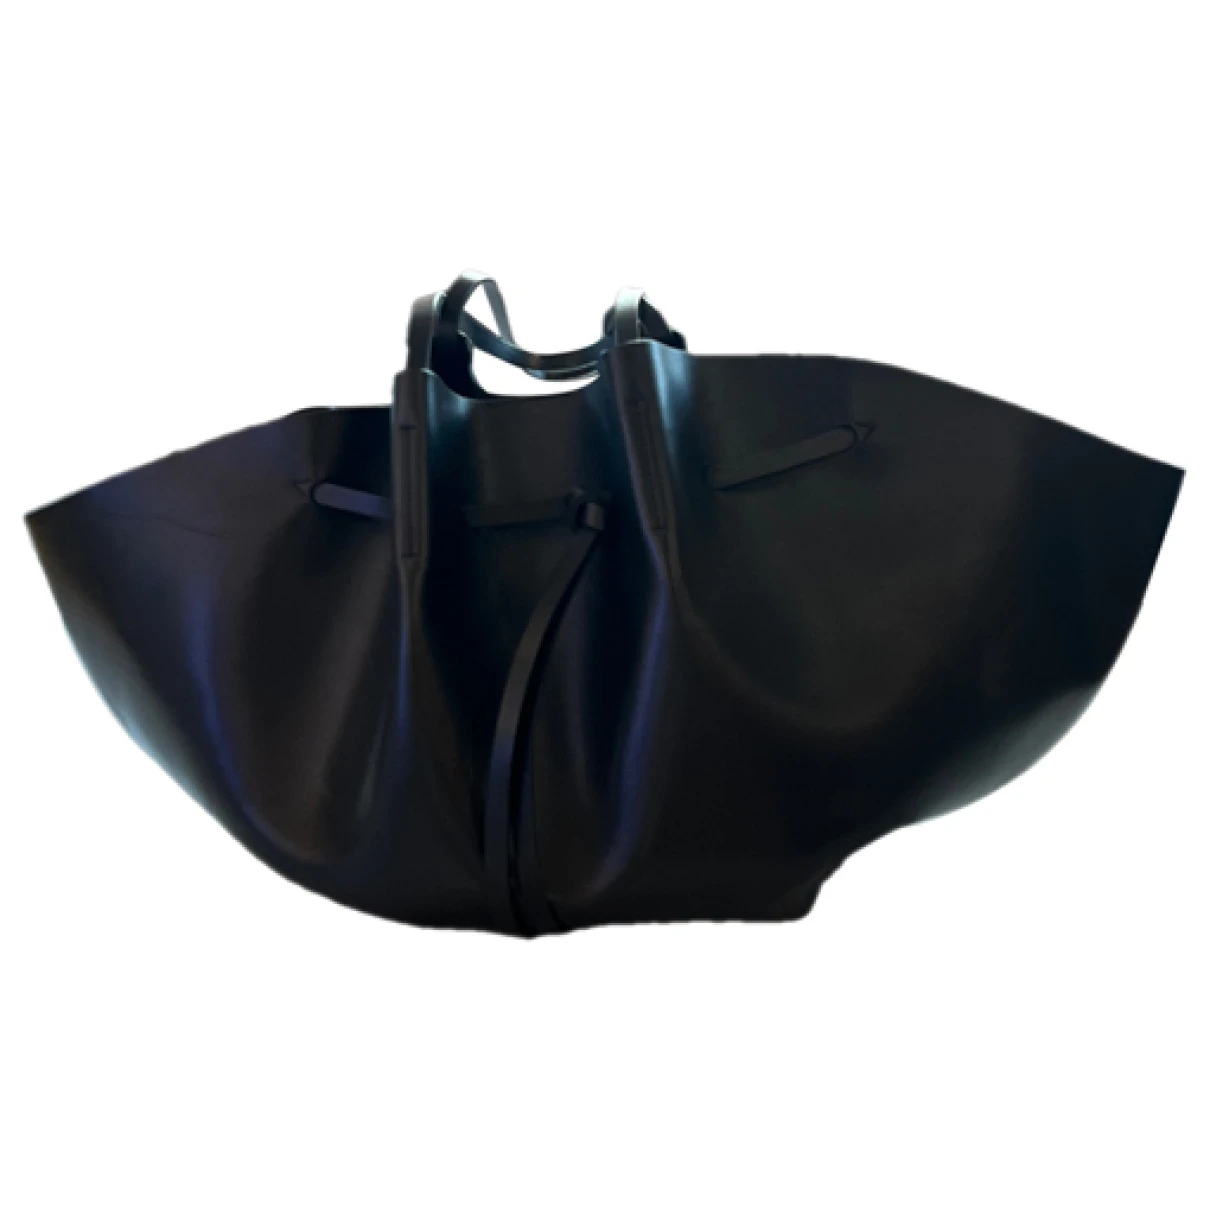 Pre-owned Nanushka Carmen Vegan Leather Handbag In Black